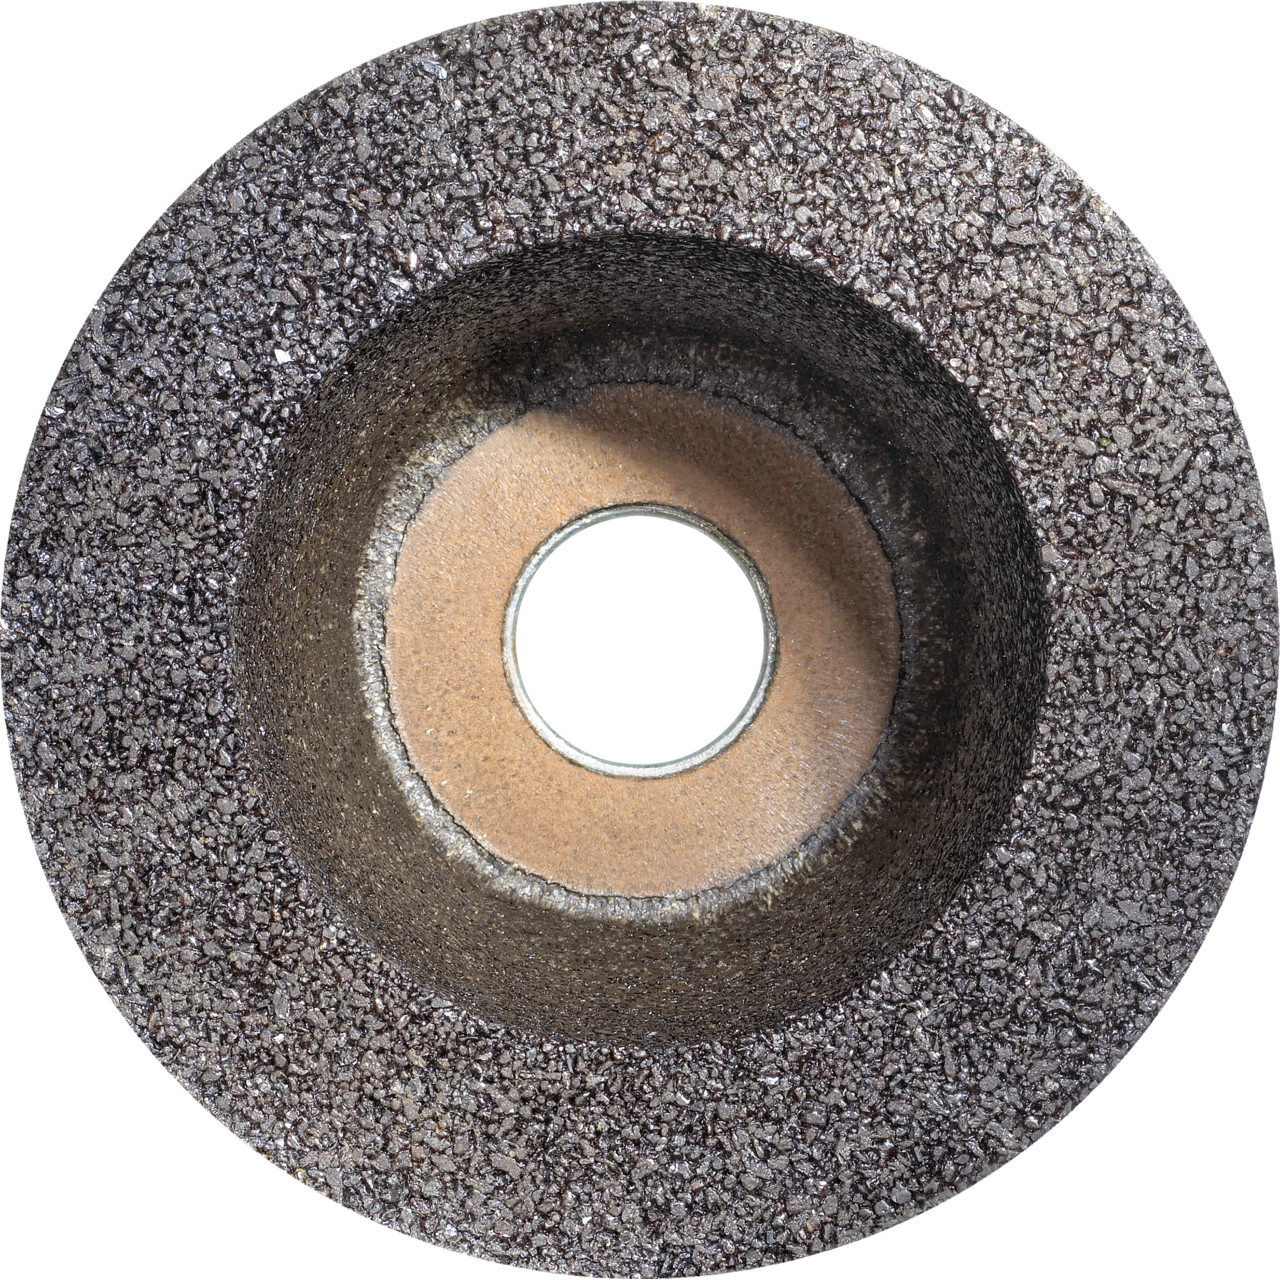 Tazza in resina sintetica Tyrolit D/JxDxH 110/90x55x22,23 Per pietra, forma: ruota a tazza 11BT, Art. 310980